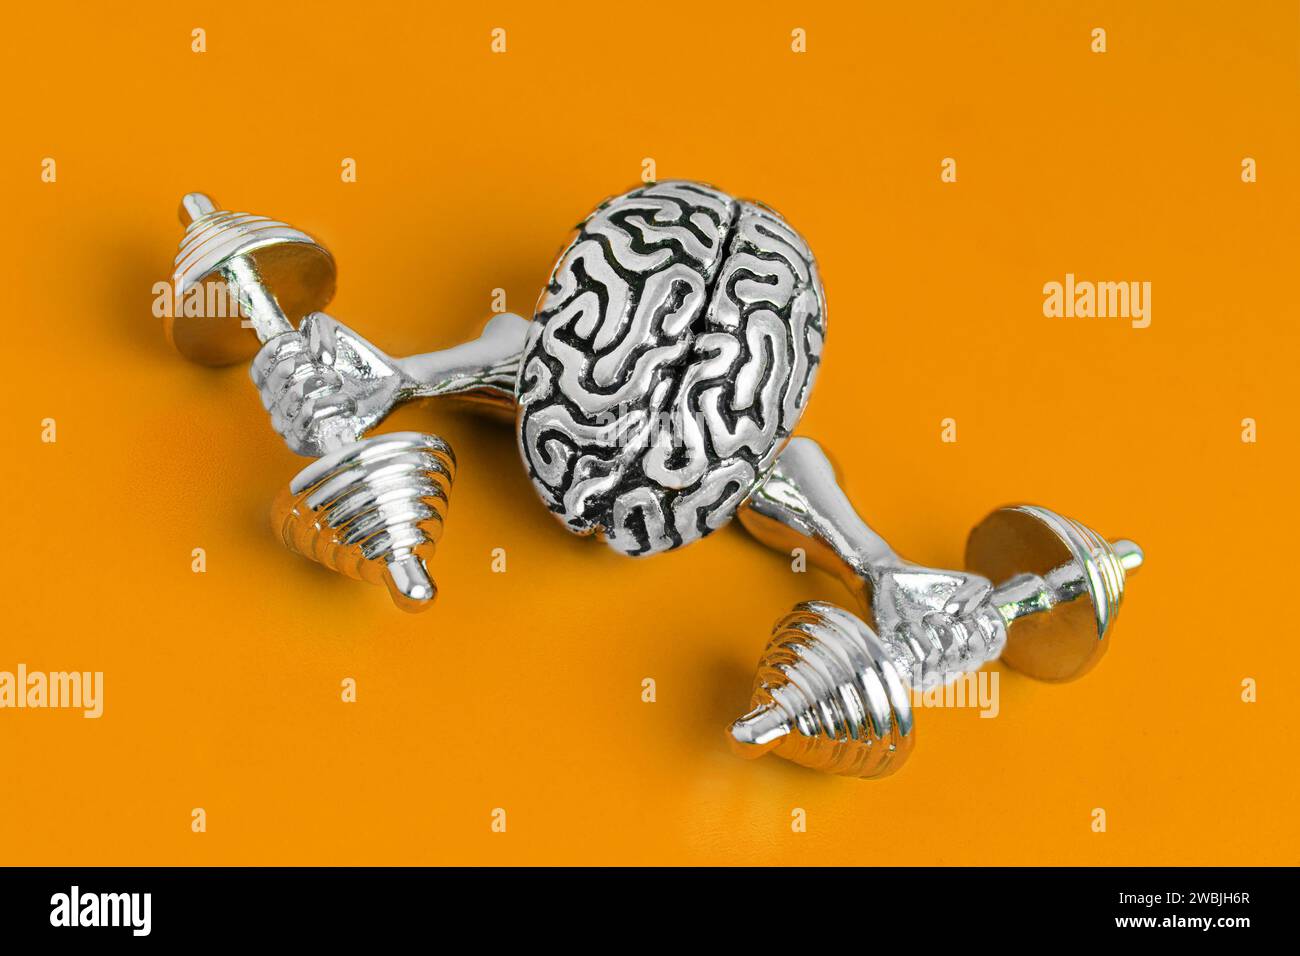 Copia anatomica di un allenamento cerebrale umano con pesi isolati su sfondo arancione. Foto Stock